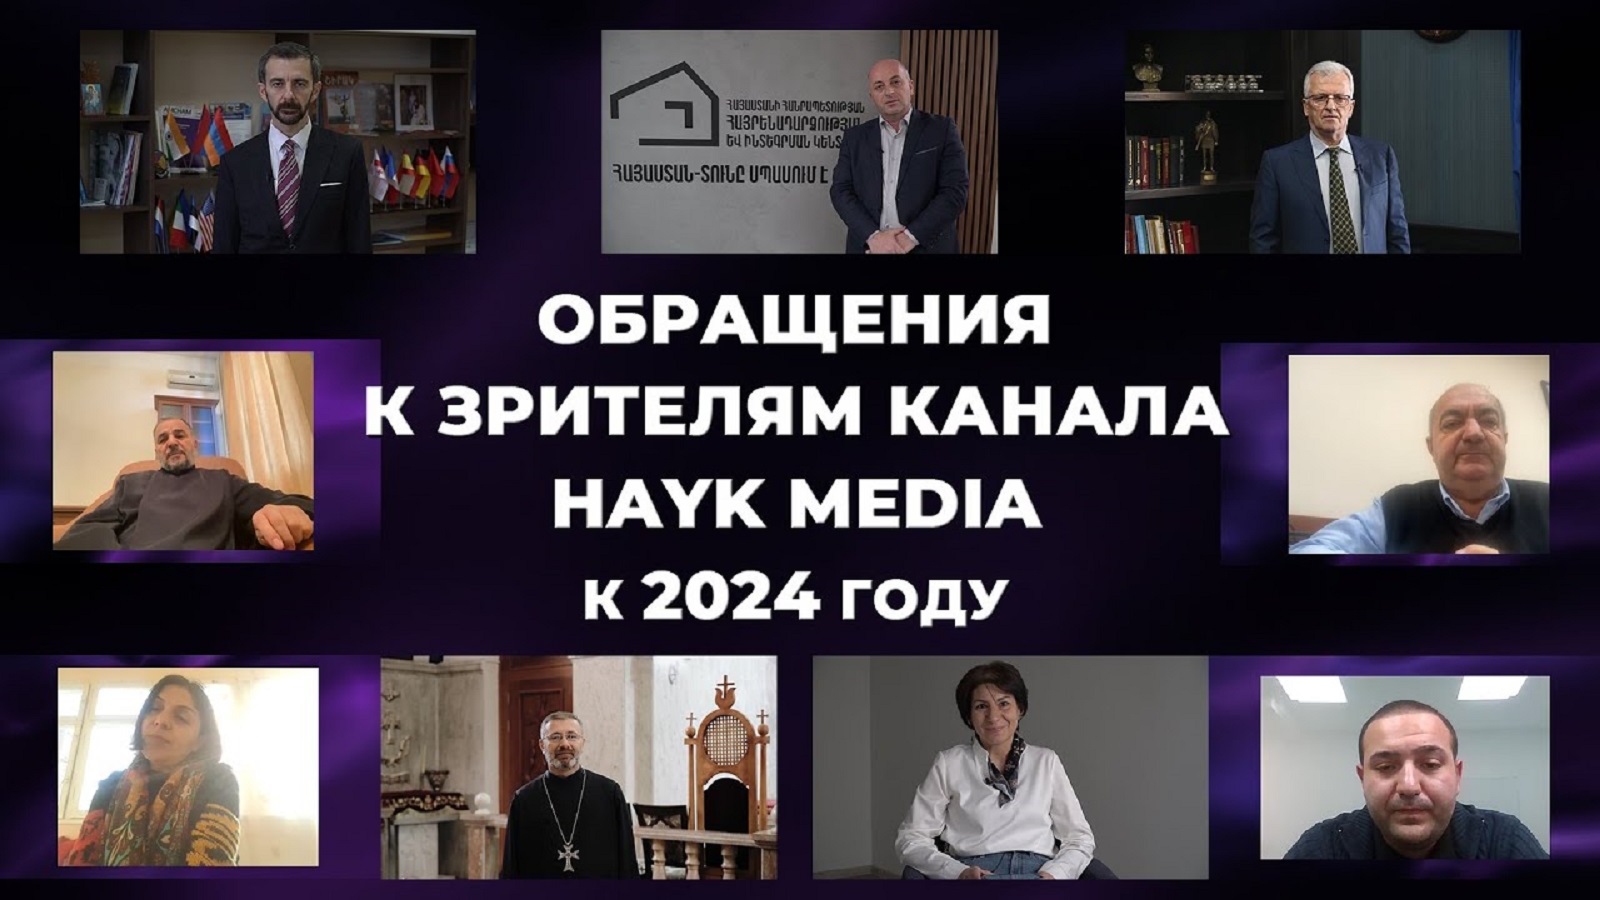 Обращения к зрителям канала HAYK media к 2024 году